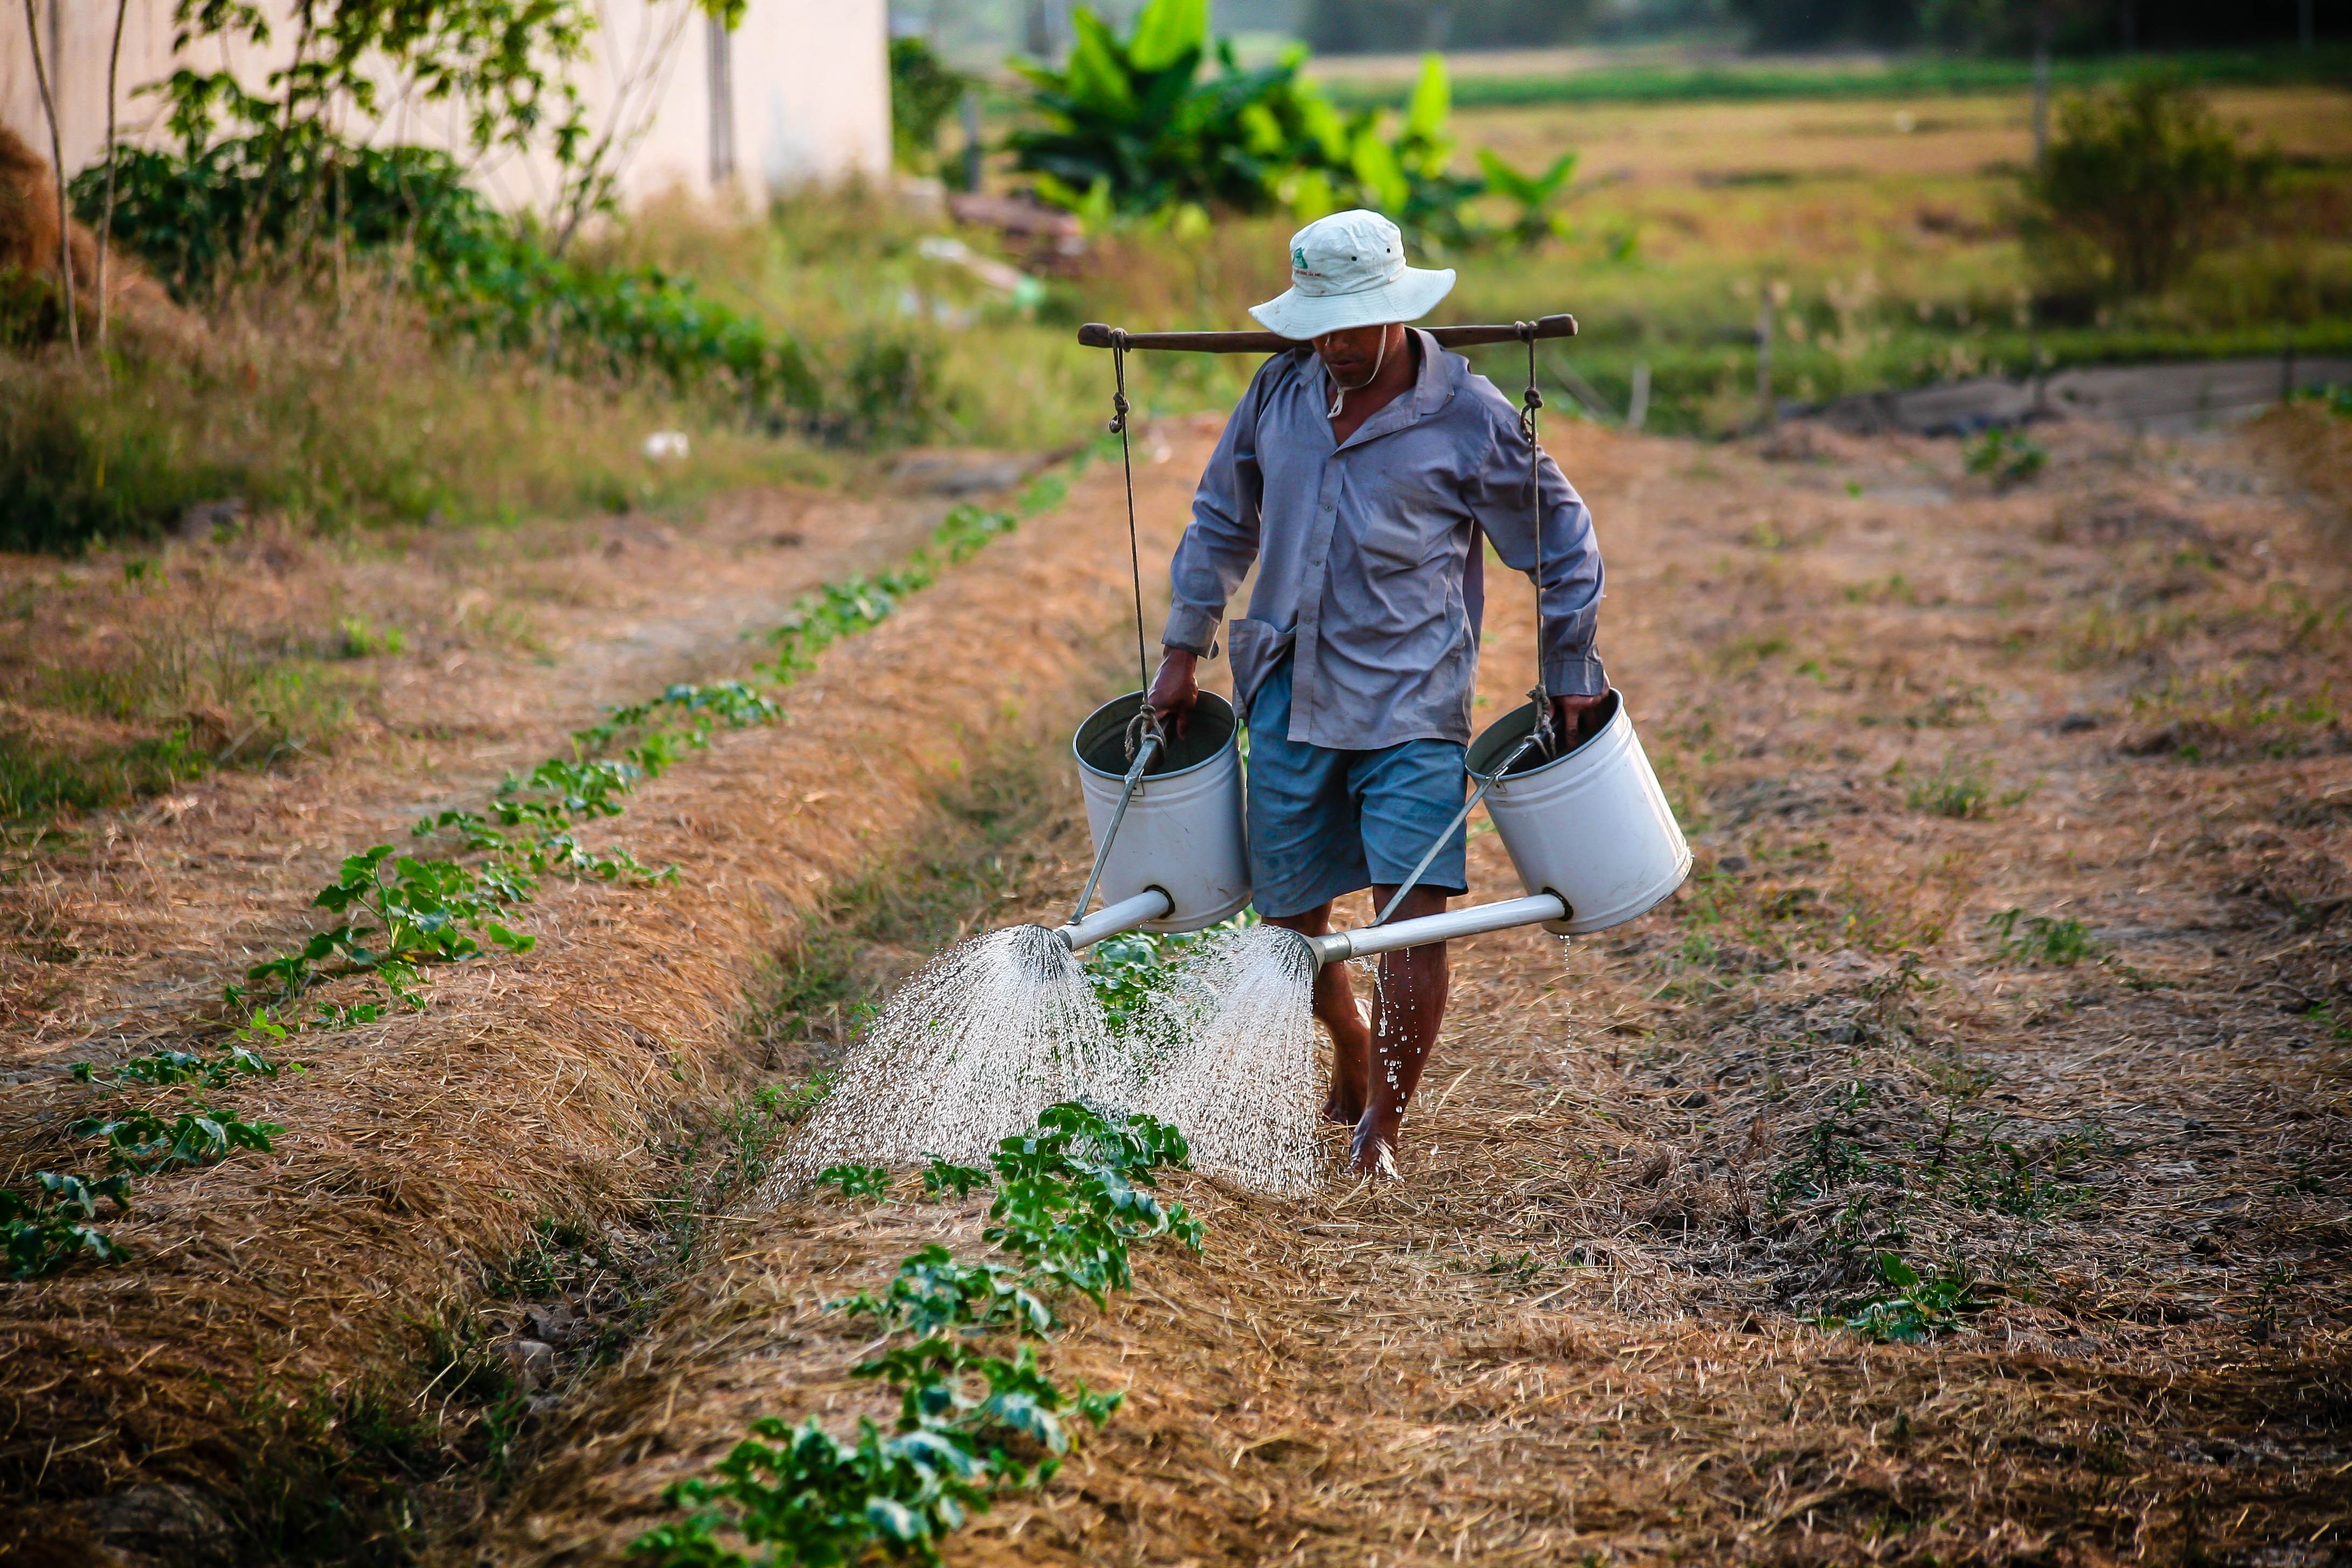 watering-watering-can-man-vietnam-162637.jpeg